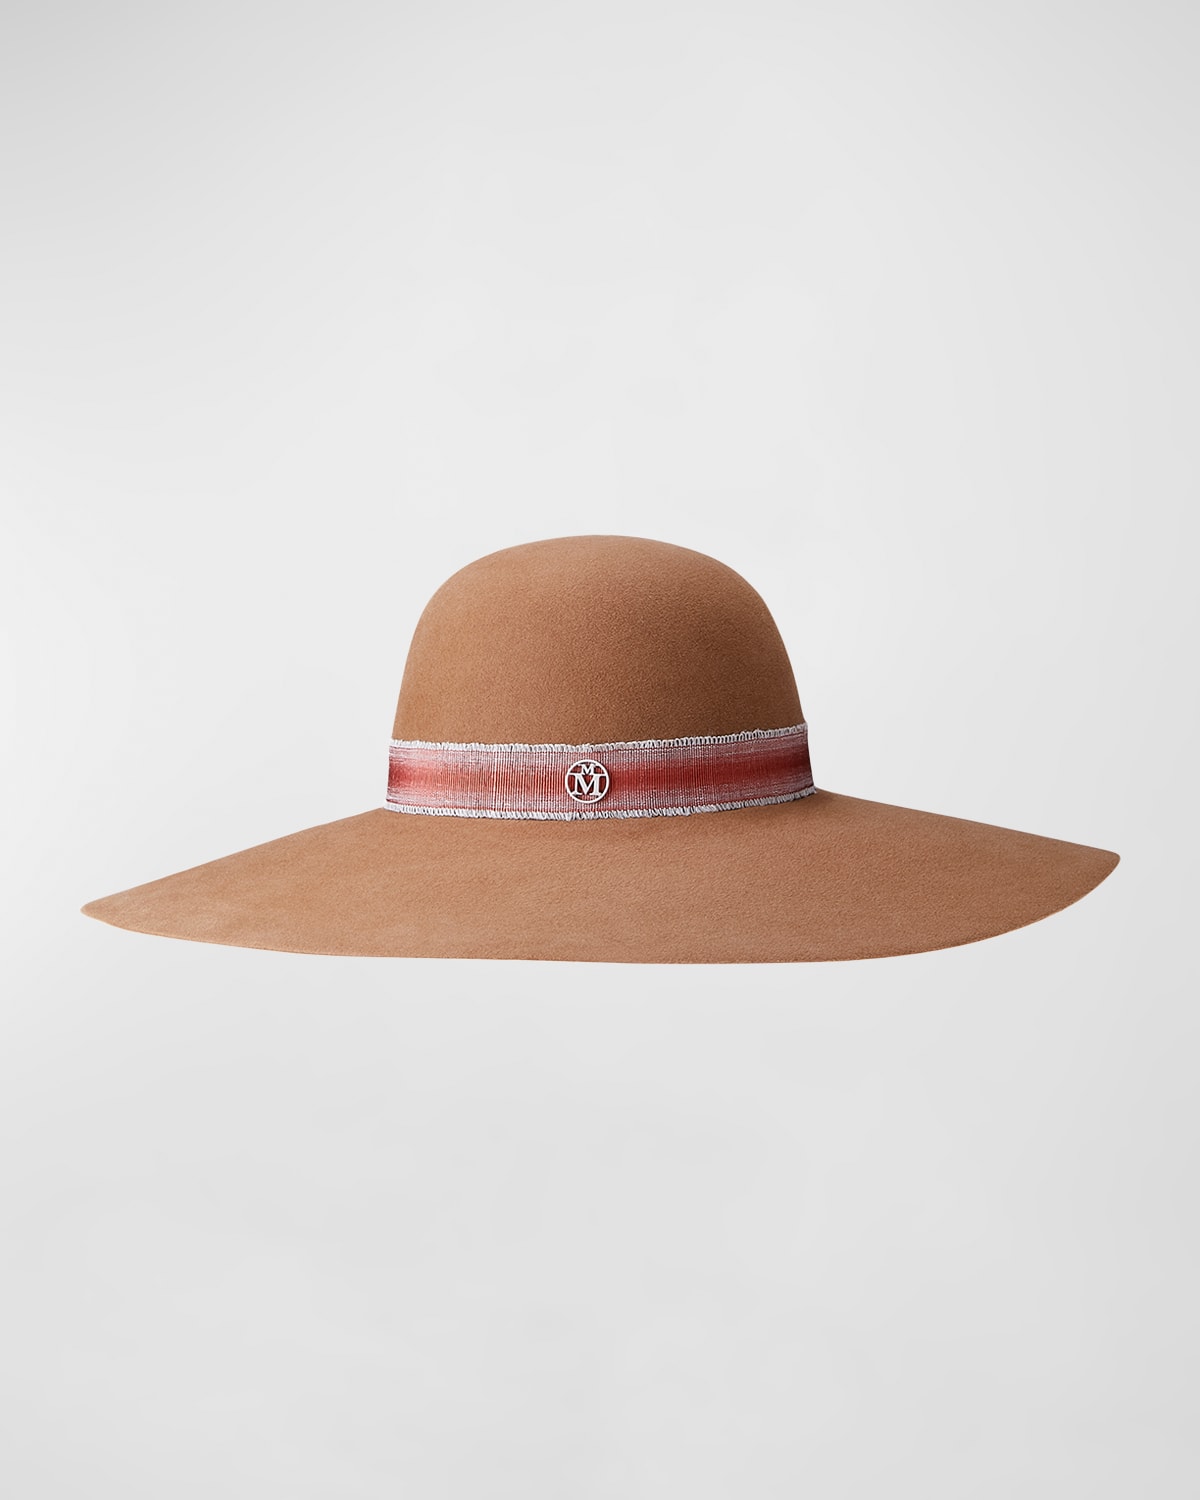 Maison Michel Blanche Felted Sun Hat In Neutrals